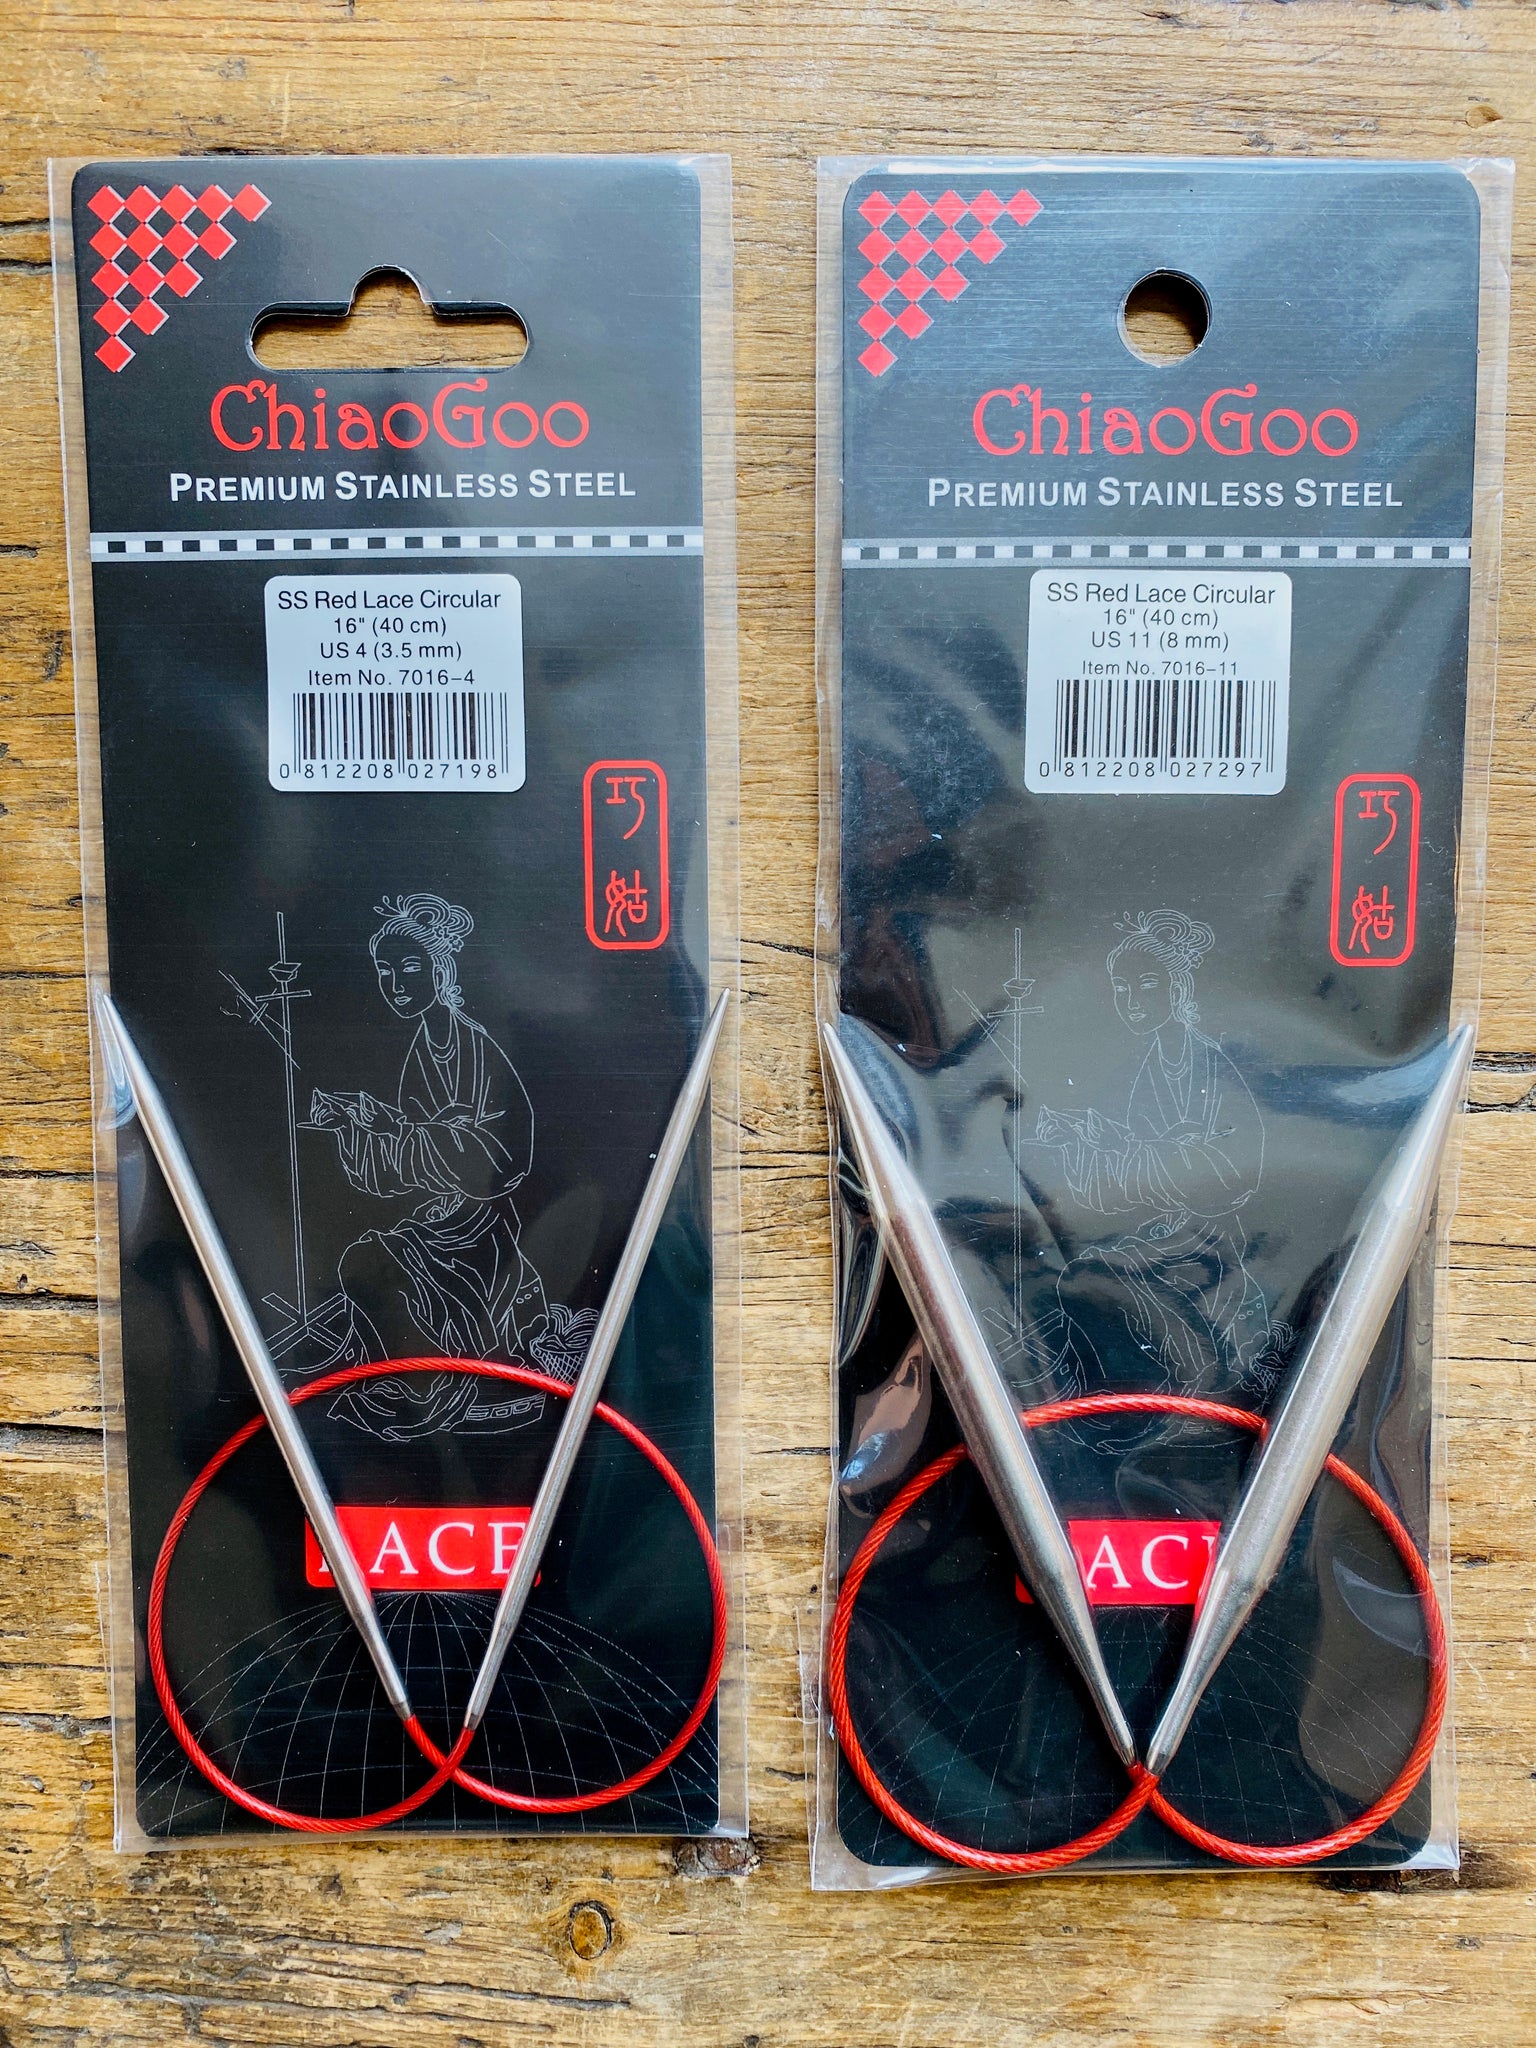 ChiaoGoo Knitting Red Lace Needles Size 24"